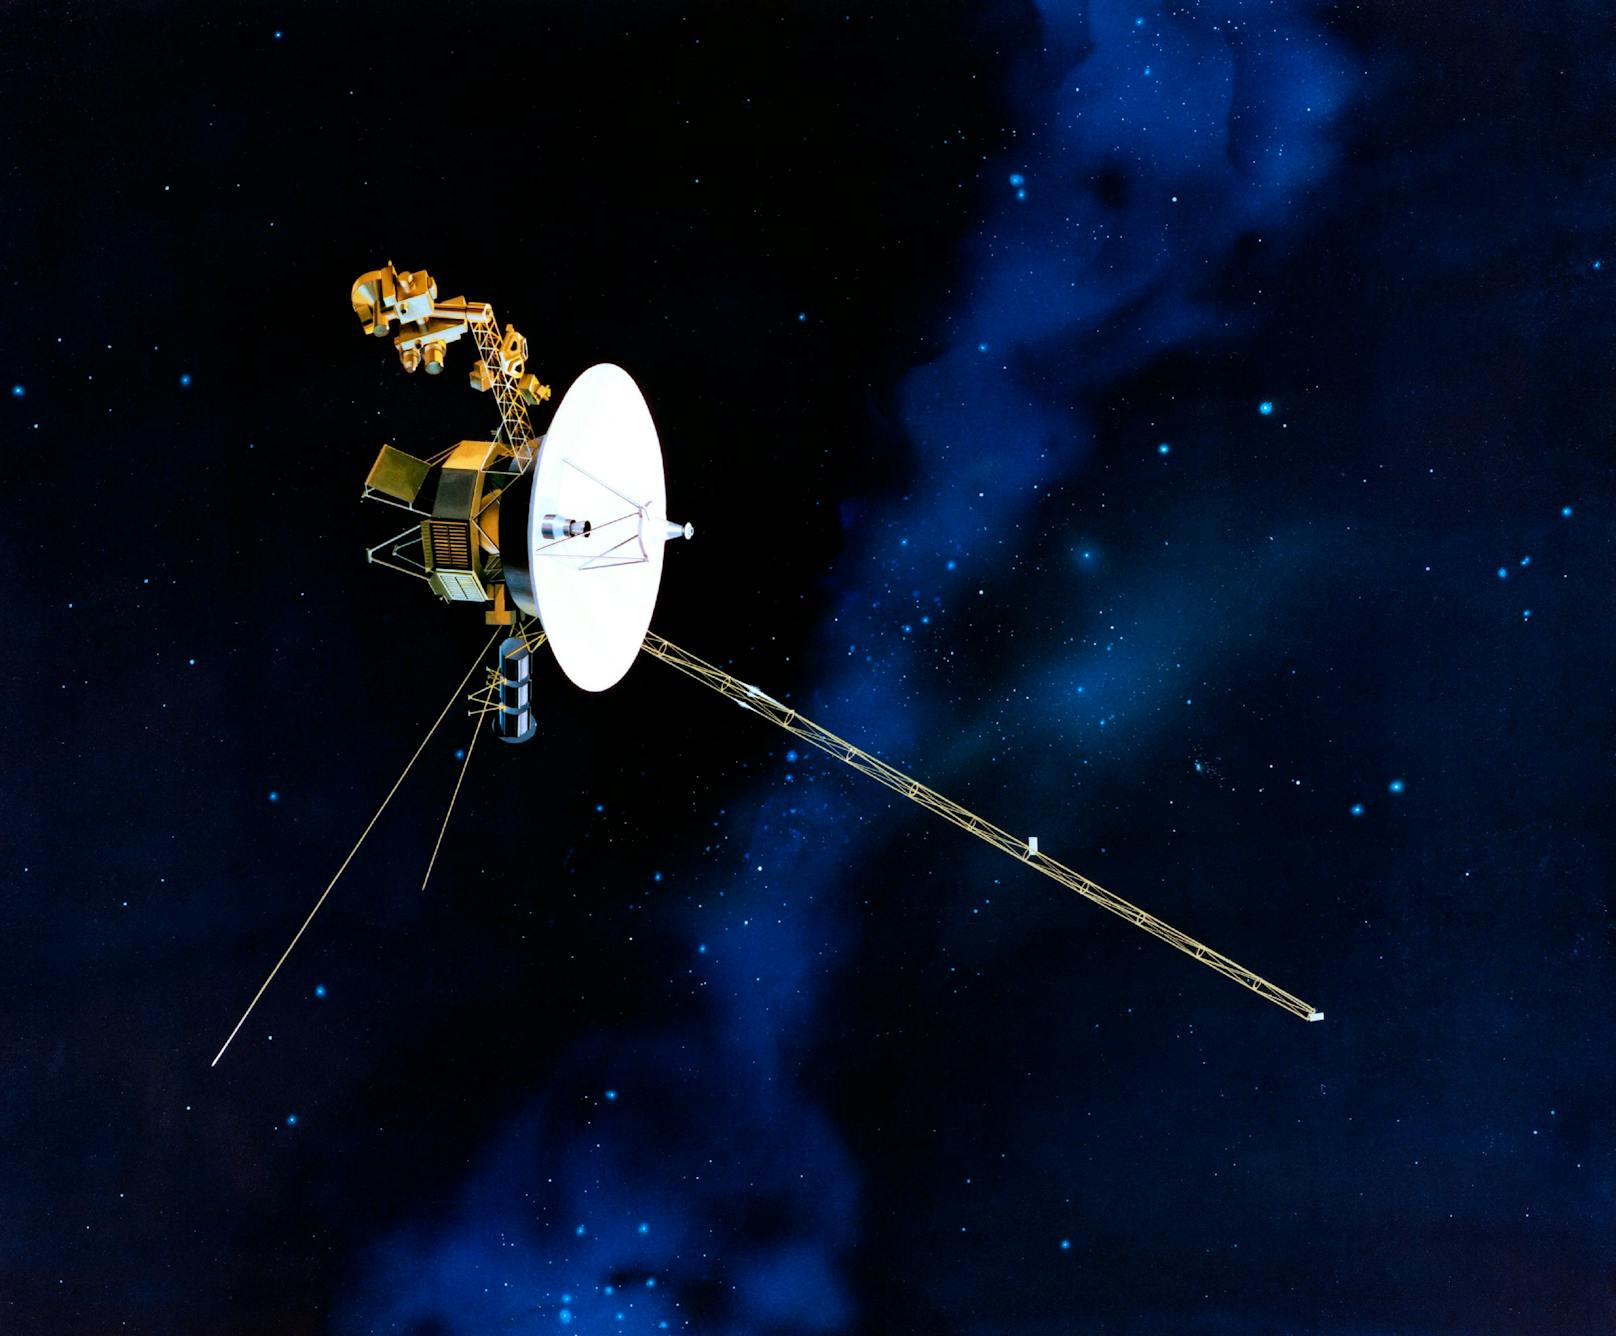 Die Raumsonde Voyager 1 und ihre Schwesternsonde Voyager 2 wurden 1977 gestartet und liefern mittlerweile Einblicke in die Tiefen des Weltalls außerhalb unseres Sonnensystems.